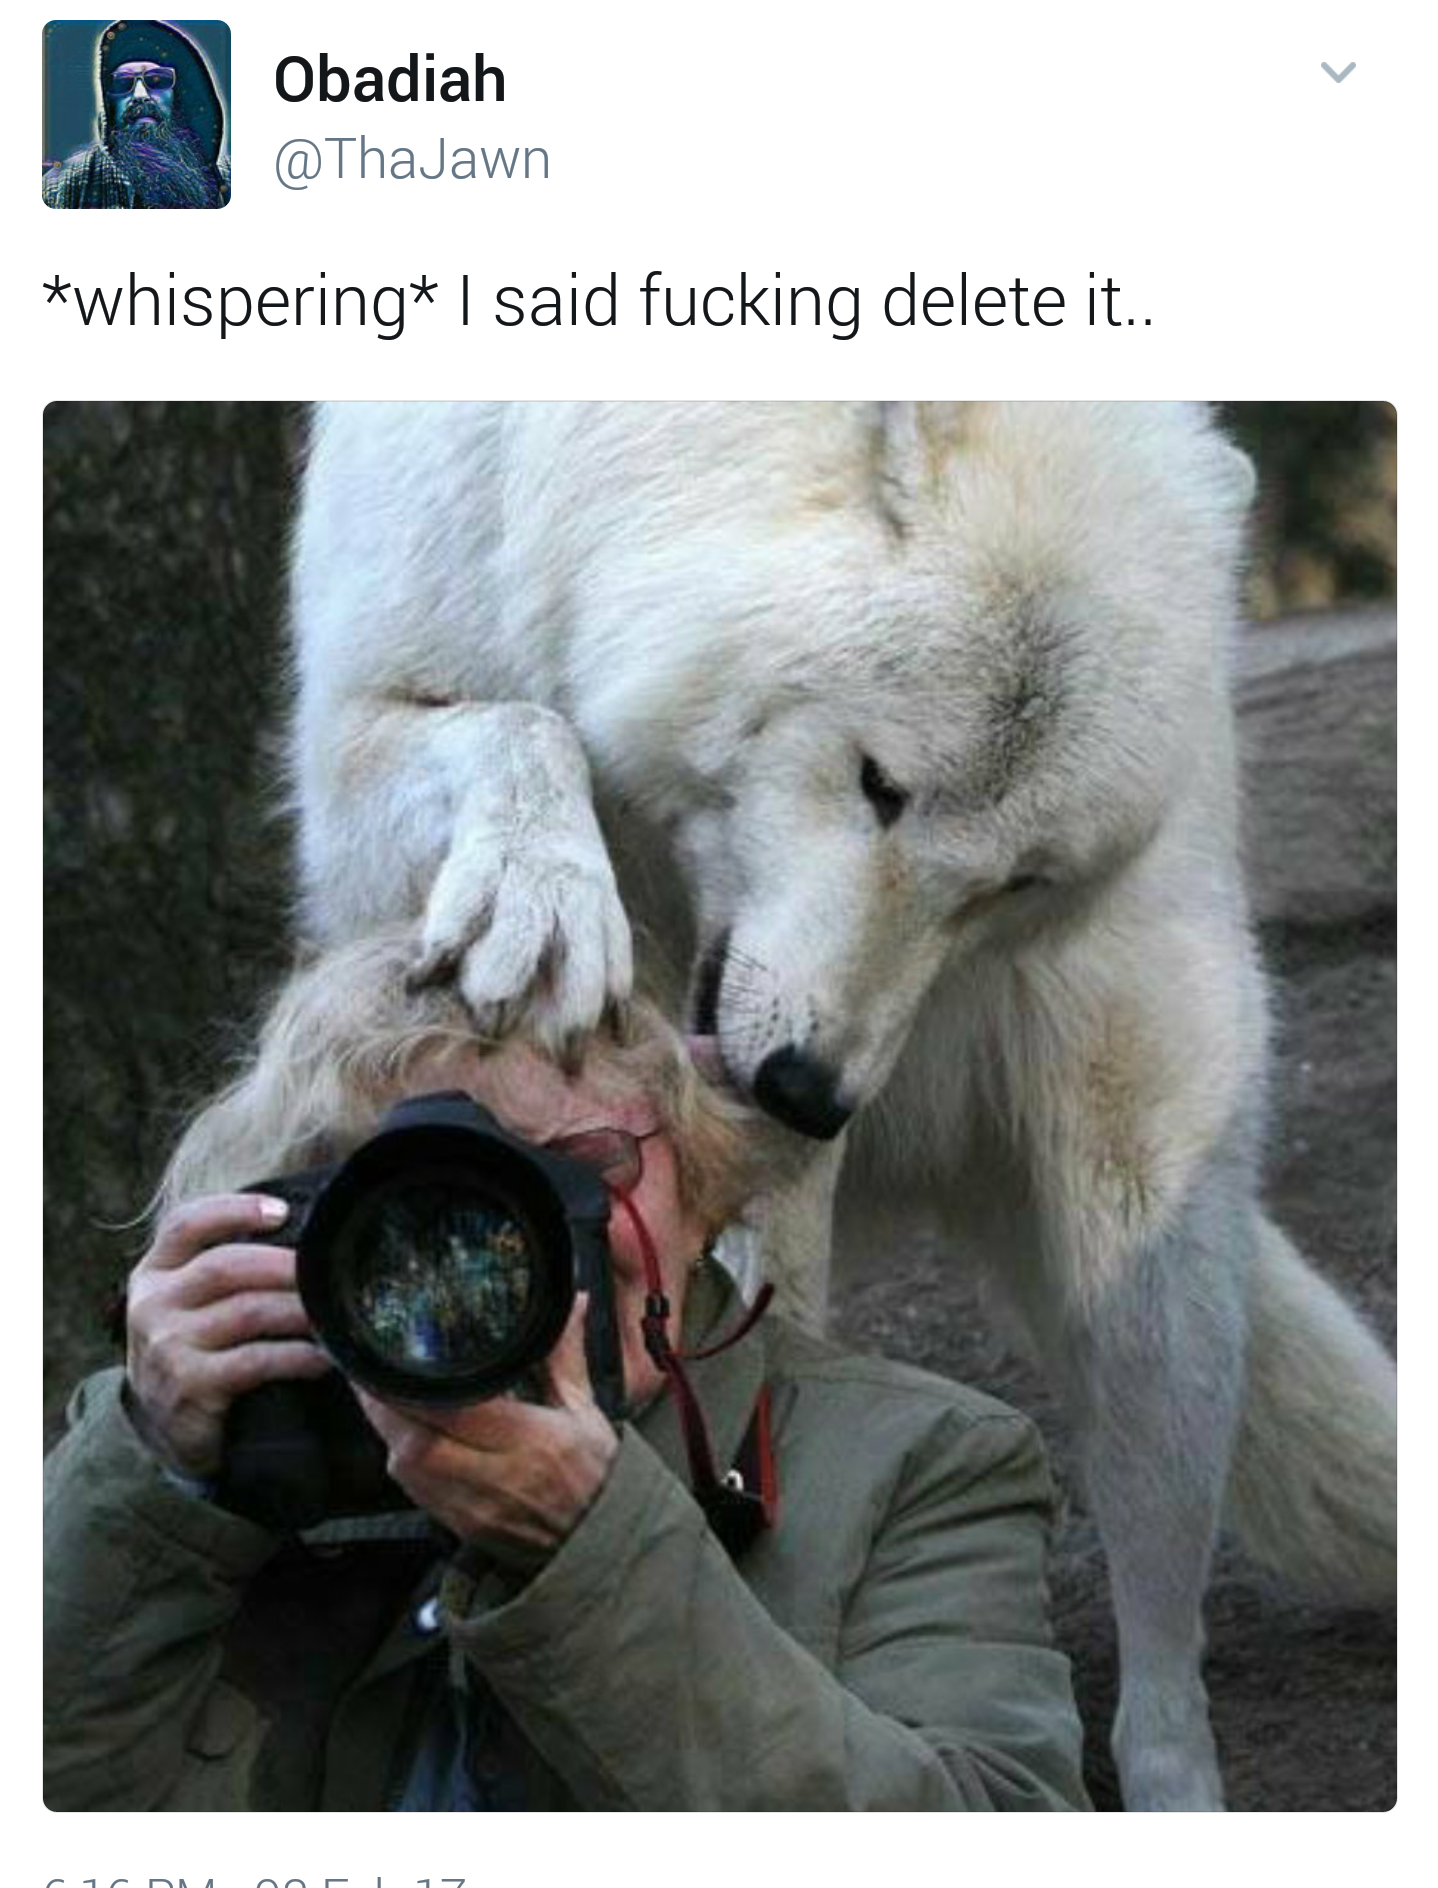 animals interrupting wildlife photography - Obadiah whispering I said fucking delete it..